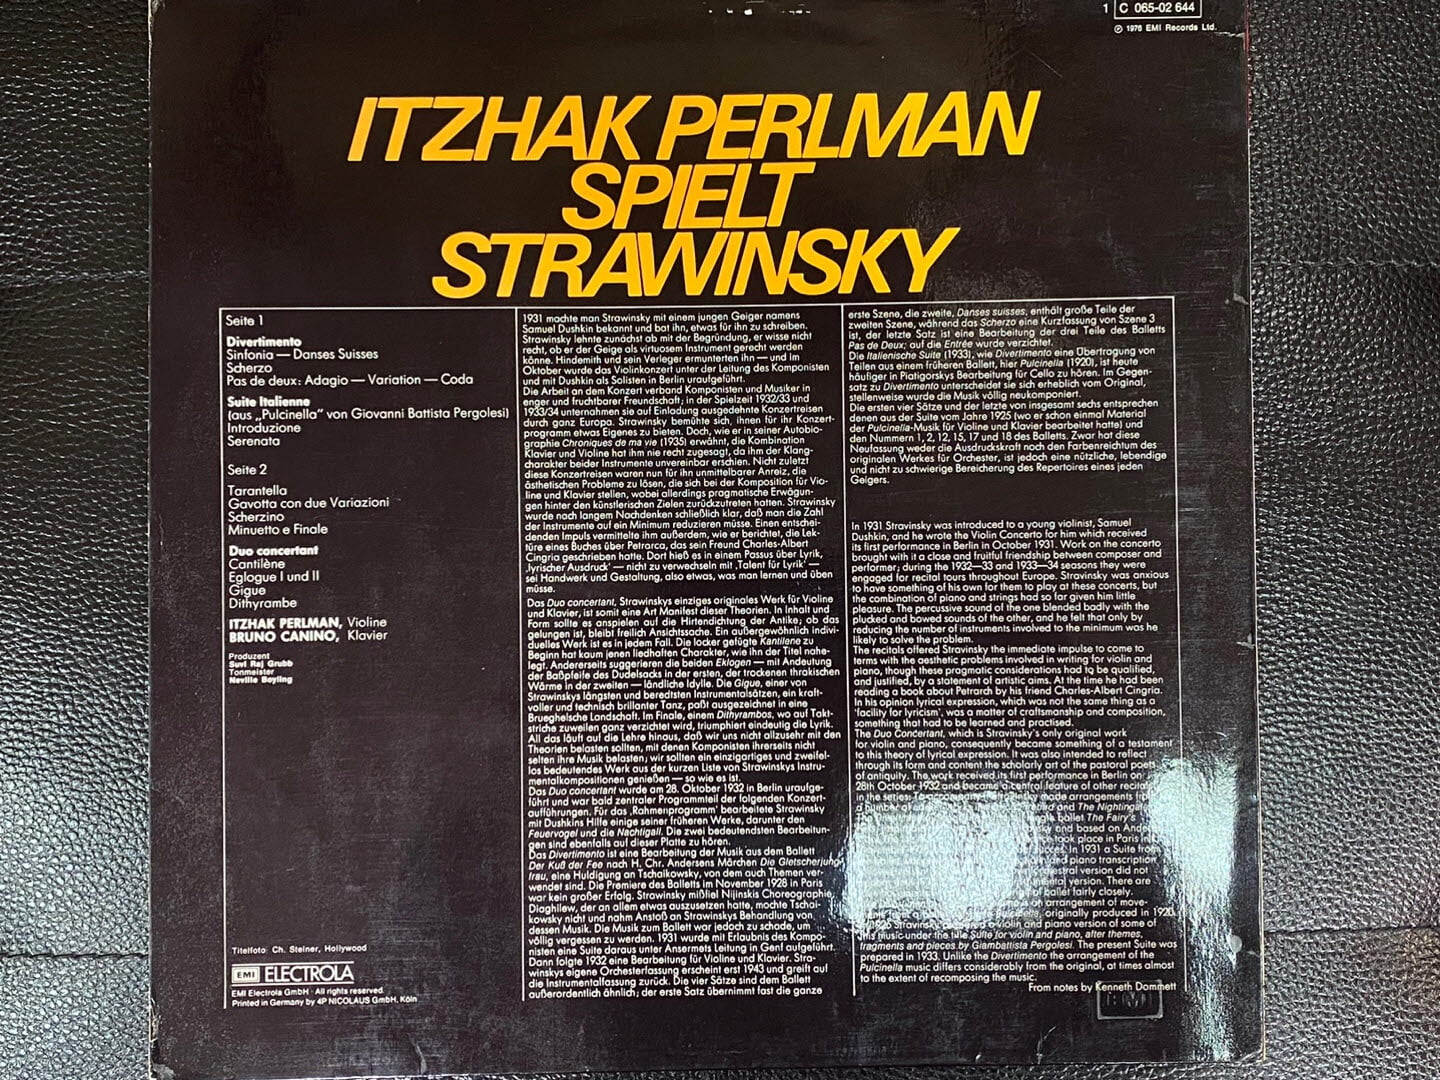 [LP] 이차크 펄먼 - Itzhak Perlman - Itzhak Perlman Spielt Strawinsky LP [독일반]